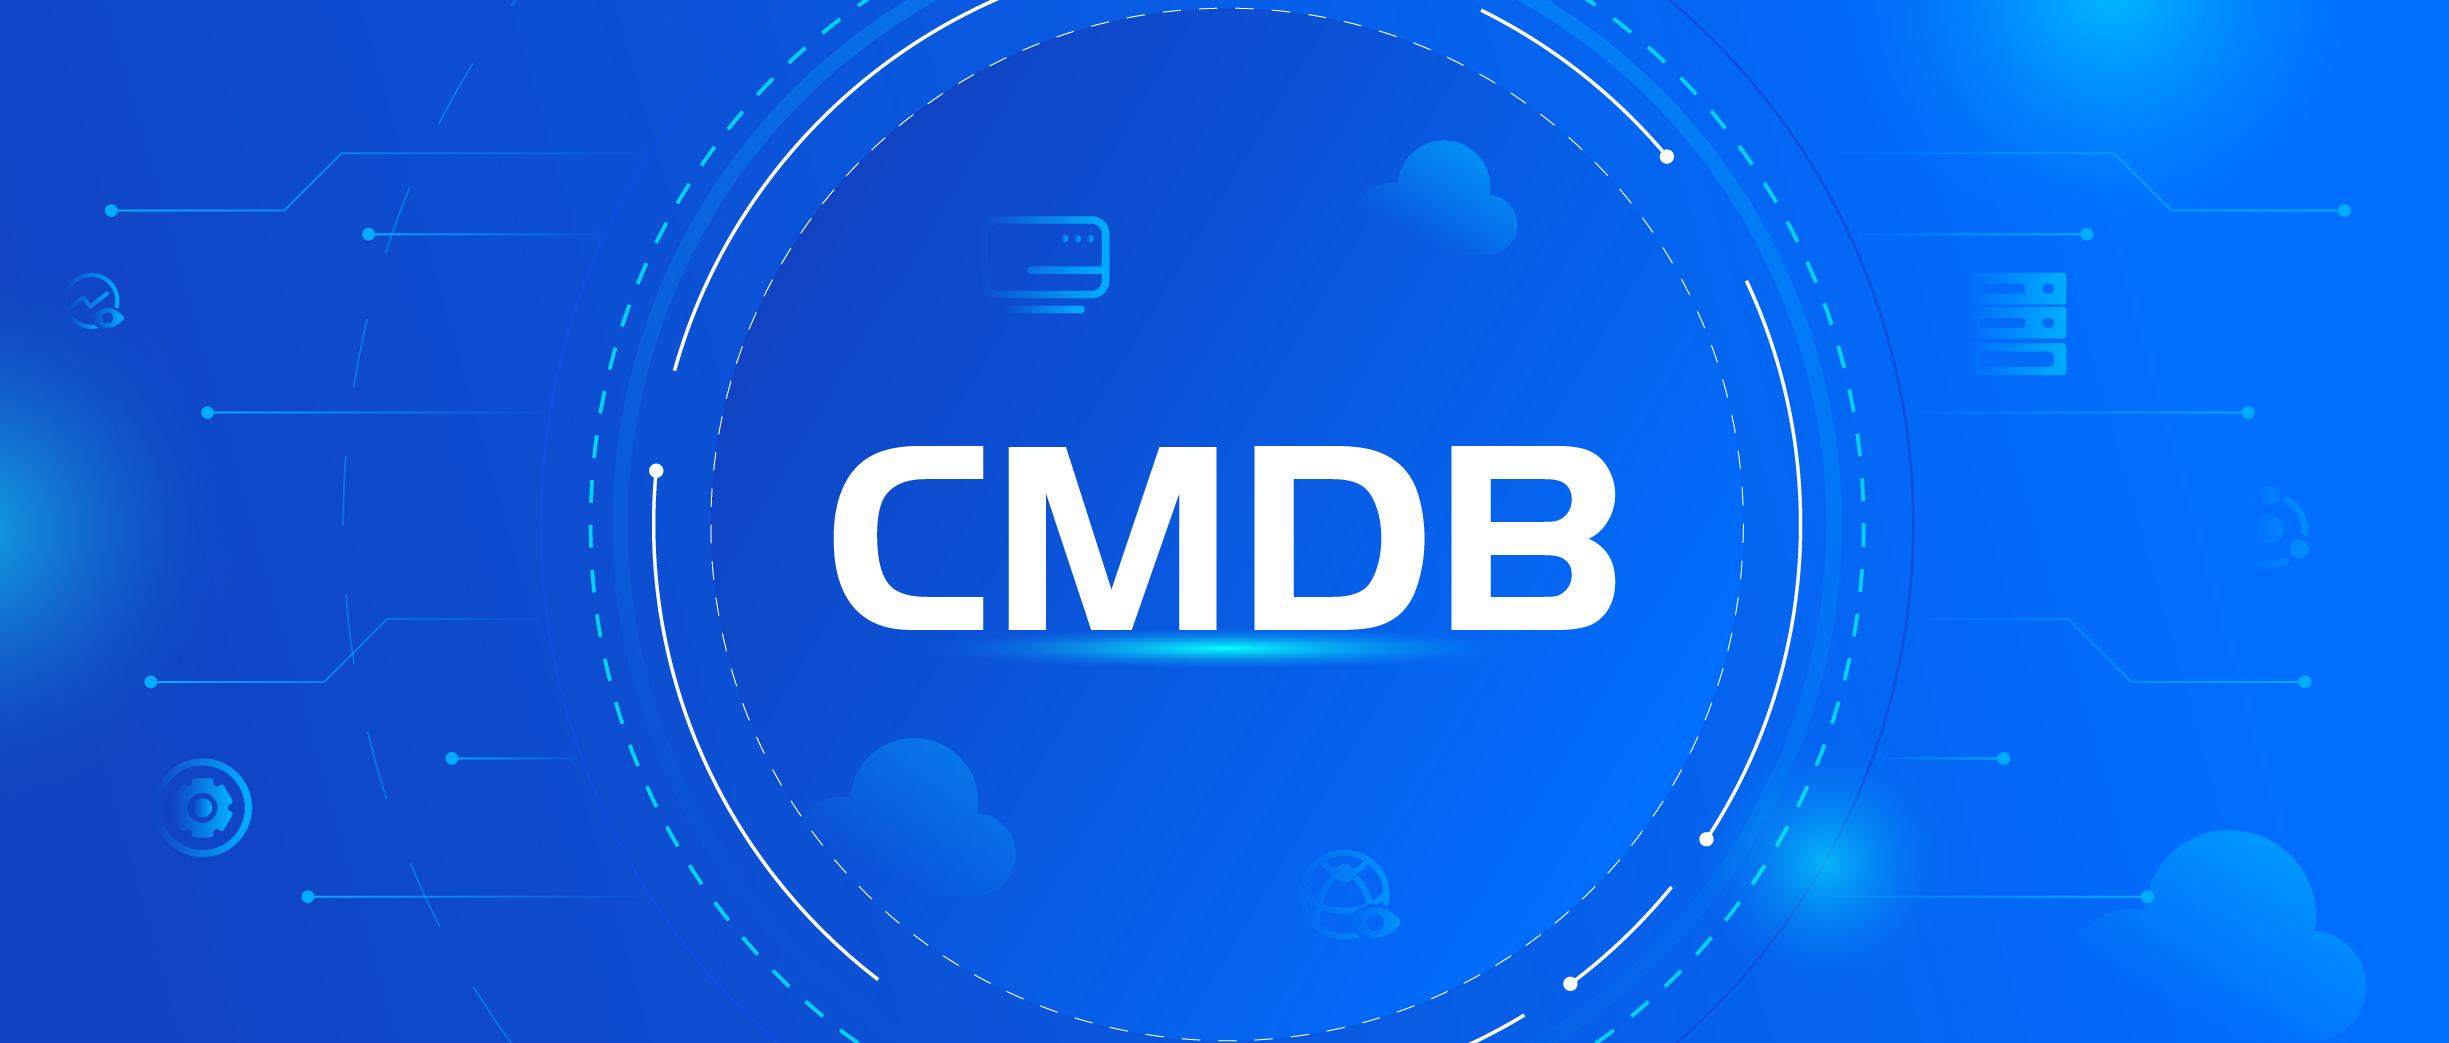 【经验分享】如何释放企业CMDB价值？——CMDB建设路径浅谈